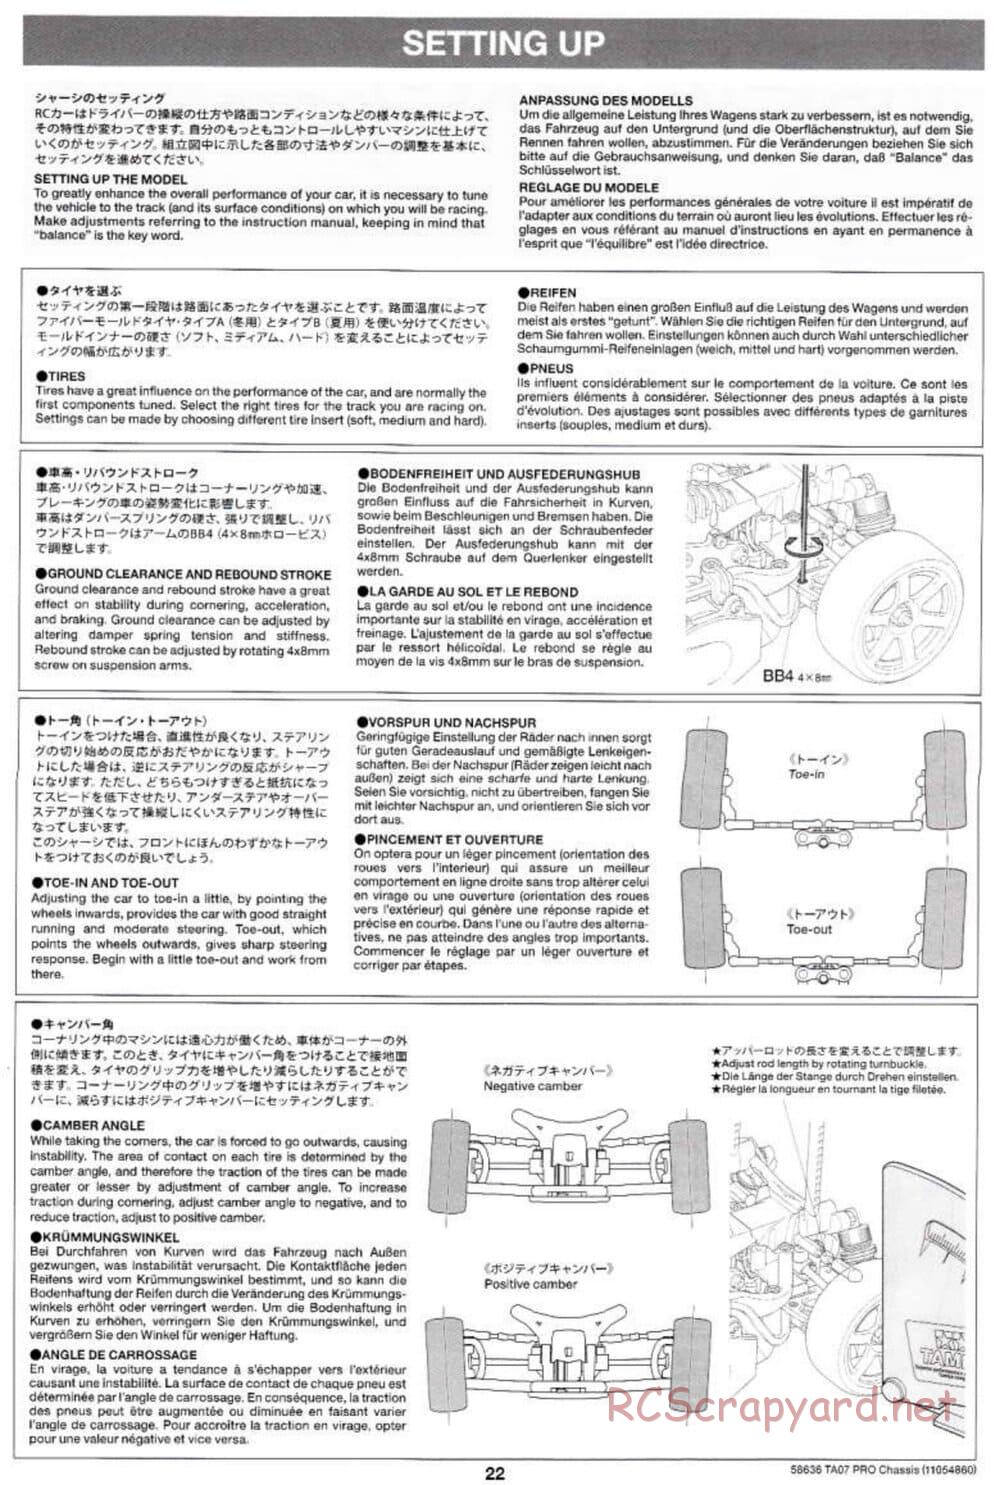 Tamiya - TA07 Pro Chassis - Manual - Page 22